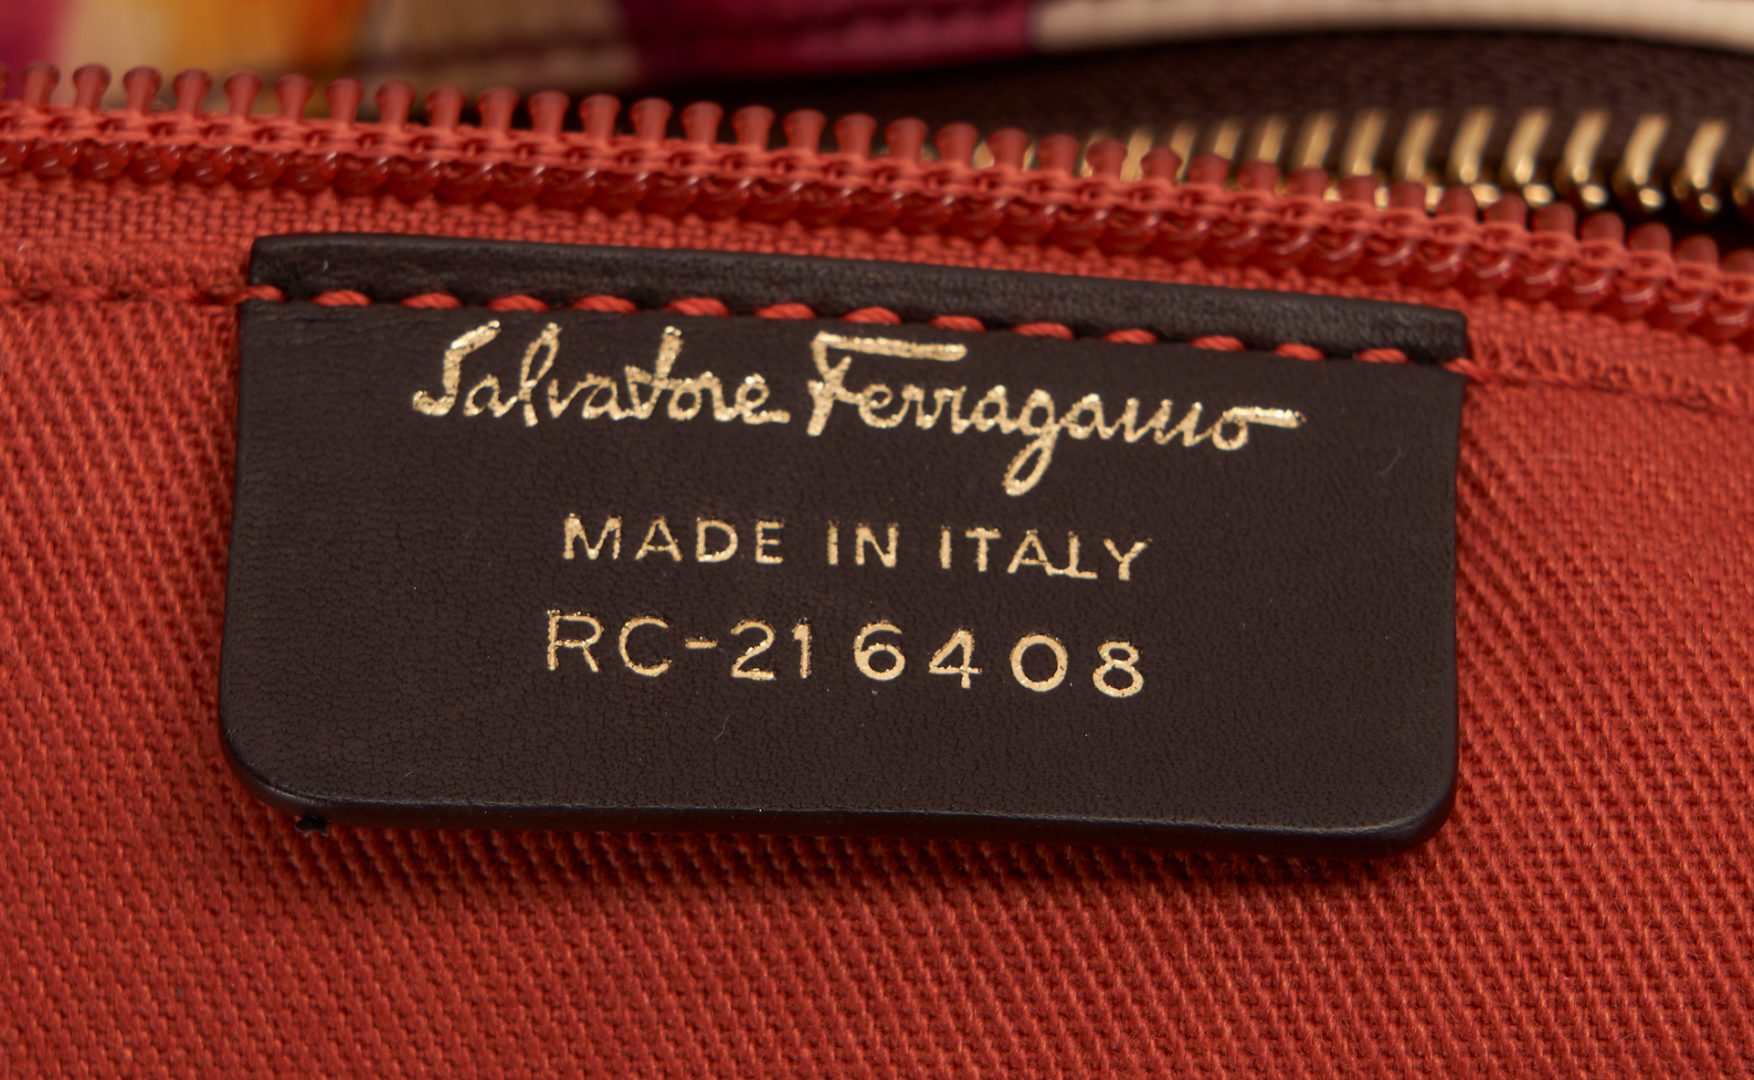 Lot 1090: 6 Salvatore Ferragamo Bags, incl. NWT